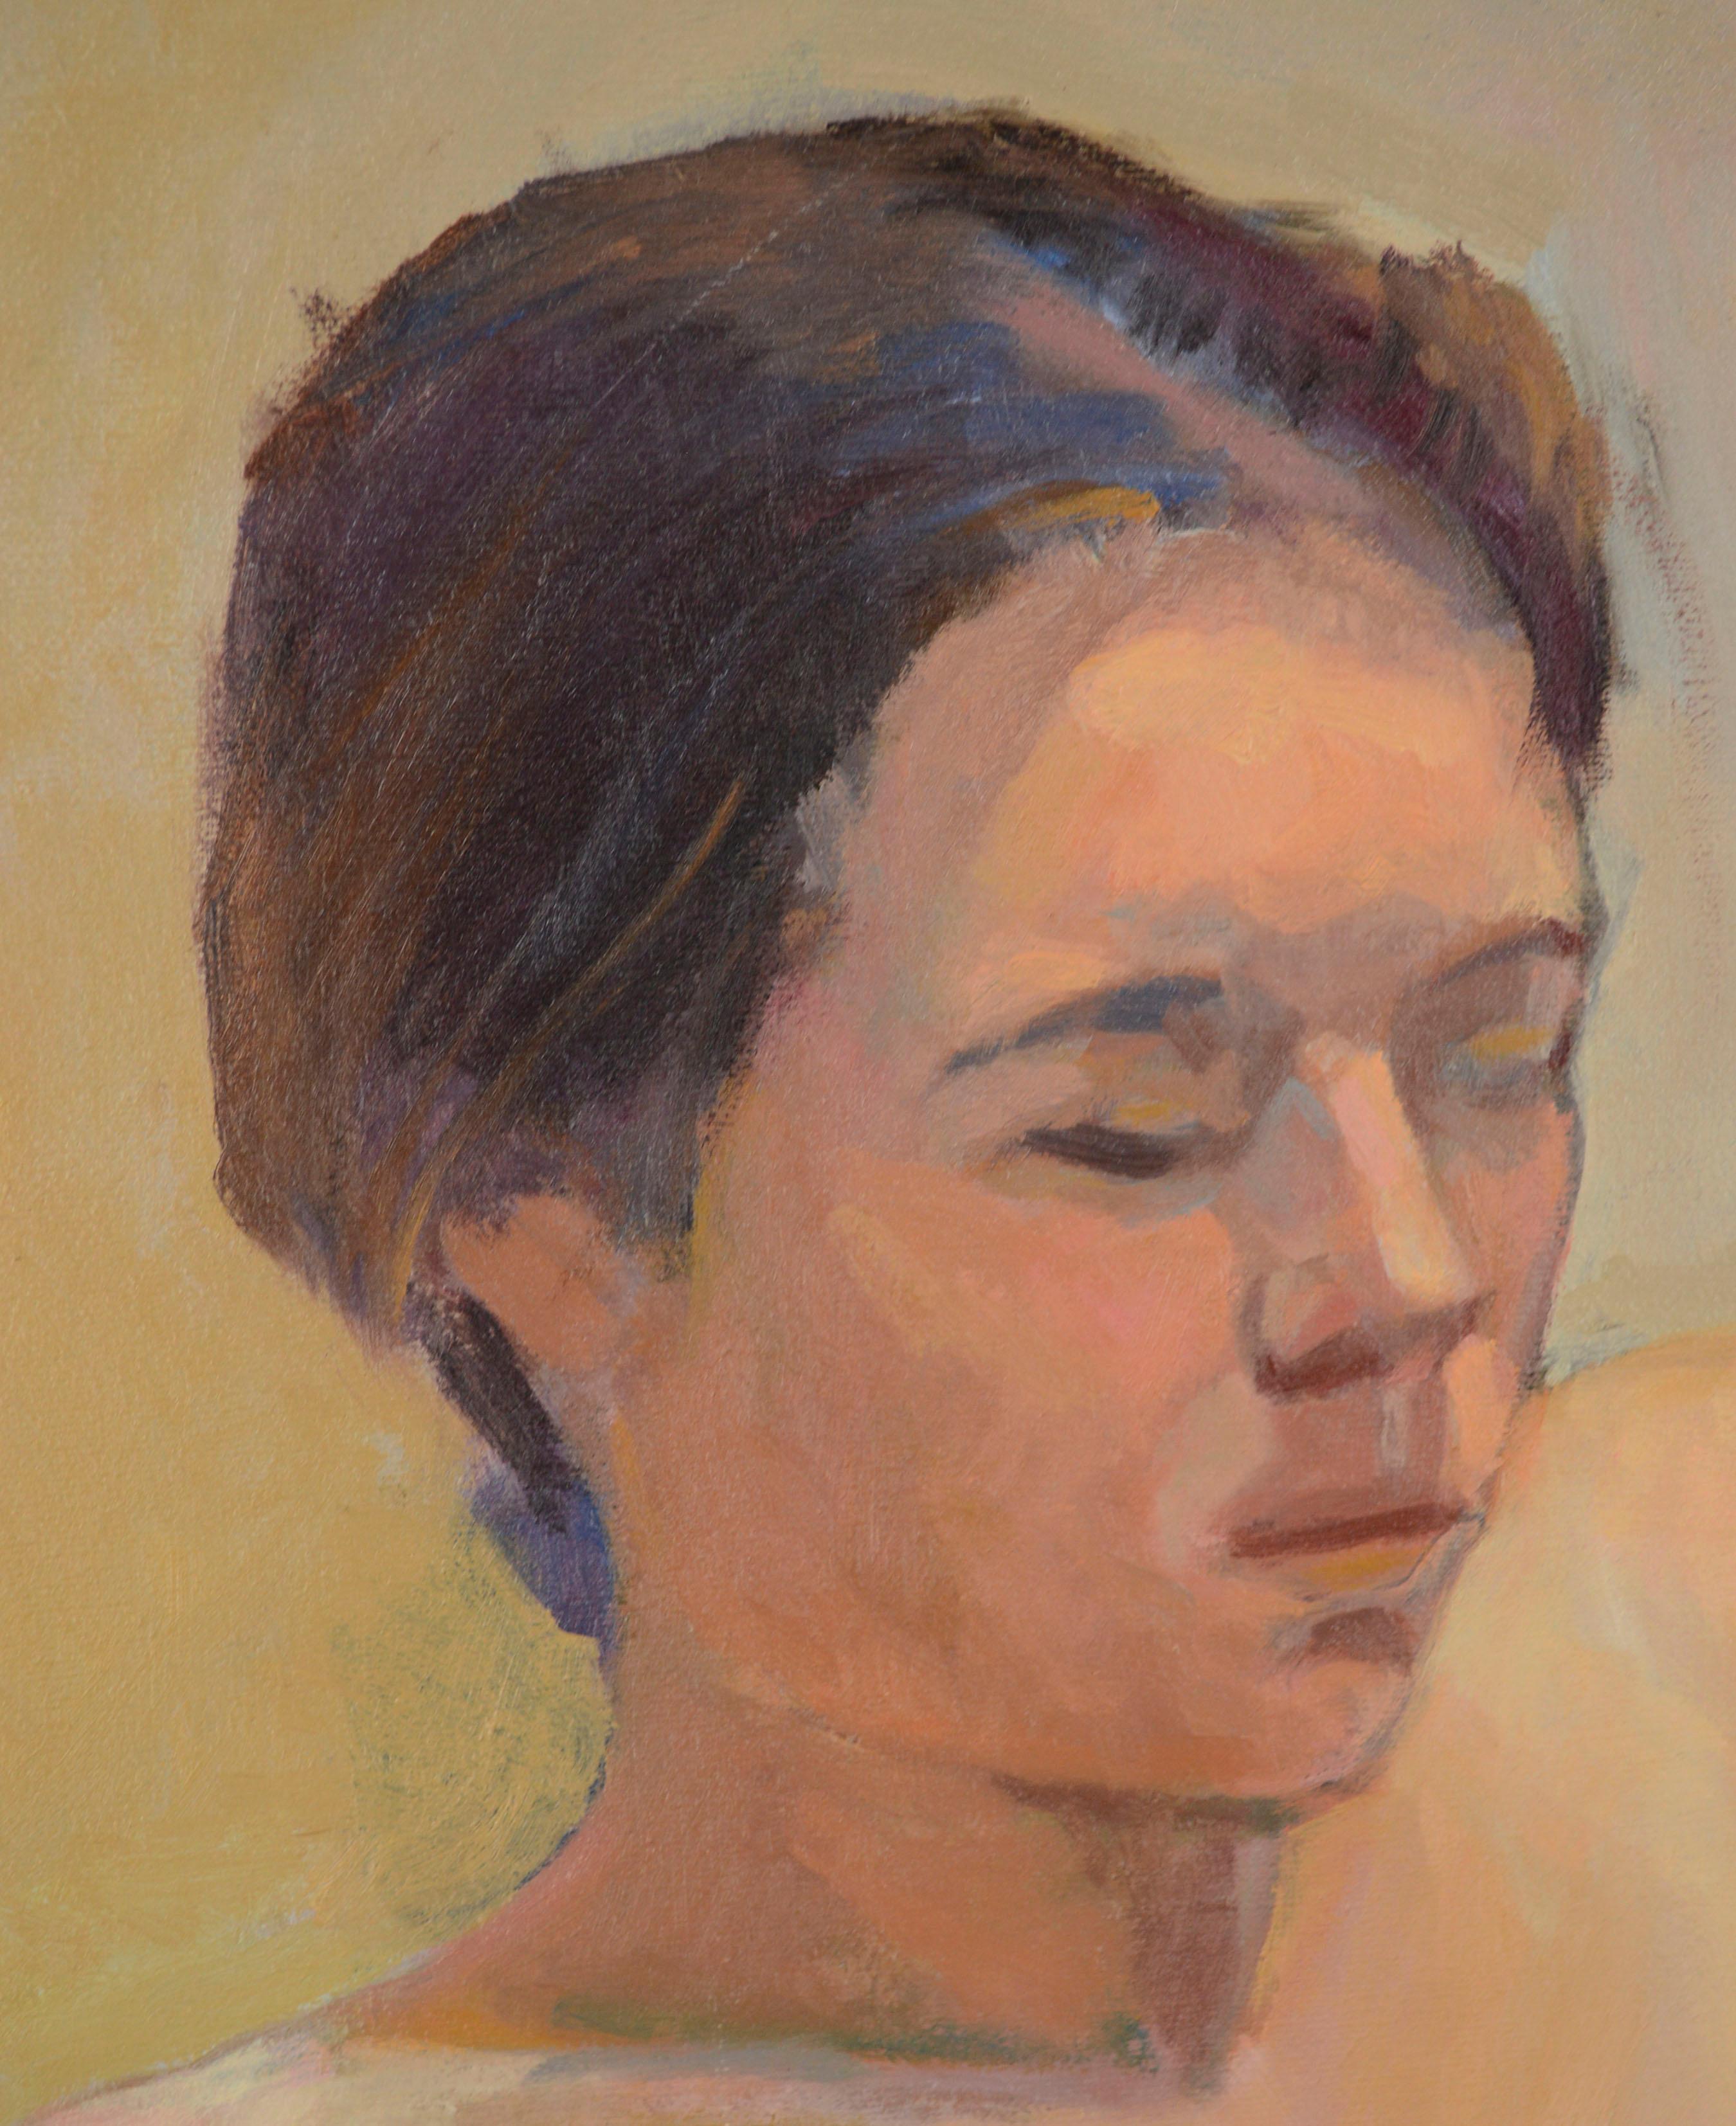 Magnifique peinture impressionniste moderne d'une femme nue assise par George Wishon (américain, né au 20e siècle). Le fond bicolore bleu clair et beige neutre donnent à cette pièce figurative une esthétique douce et raffinée. 

Signé « Wishon » en